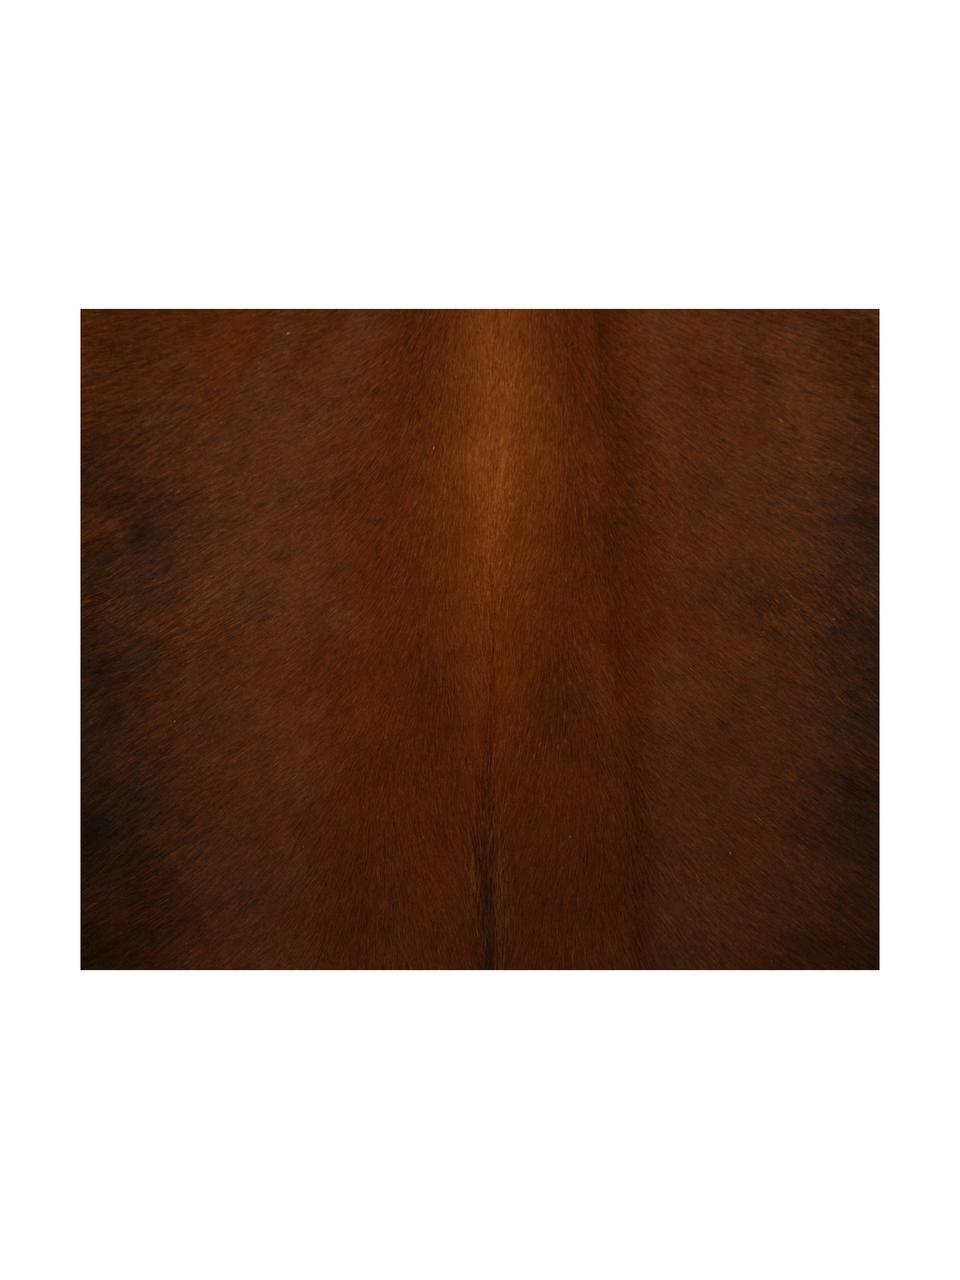 Tapis en peau de vache Aquarius, Peau de vache, Brun foncé, Peau de vache, exemplaire unique nº 940, 160 x 180 cm